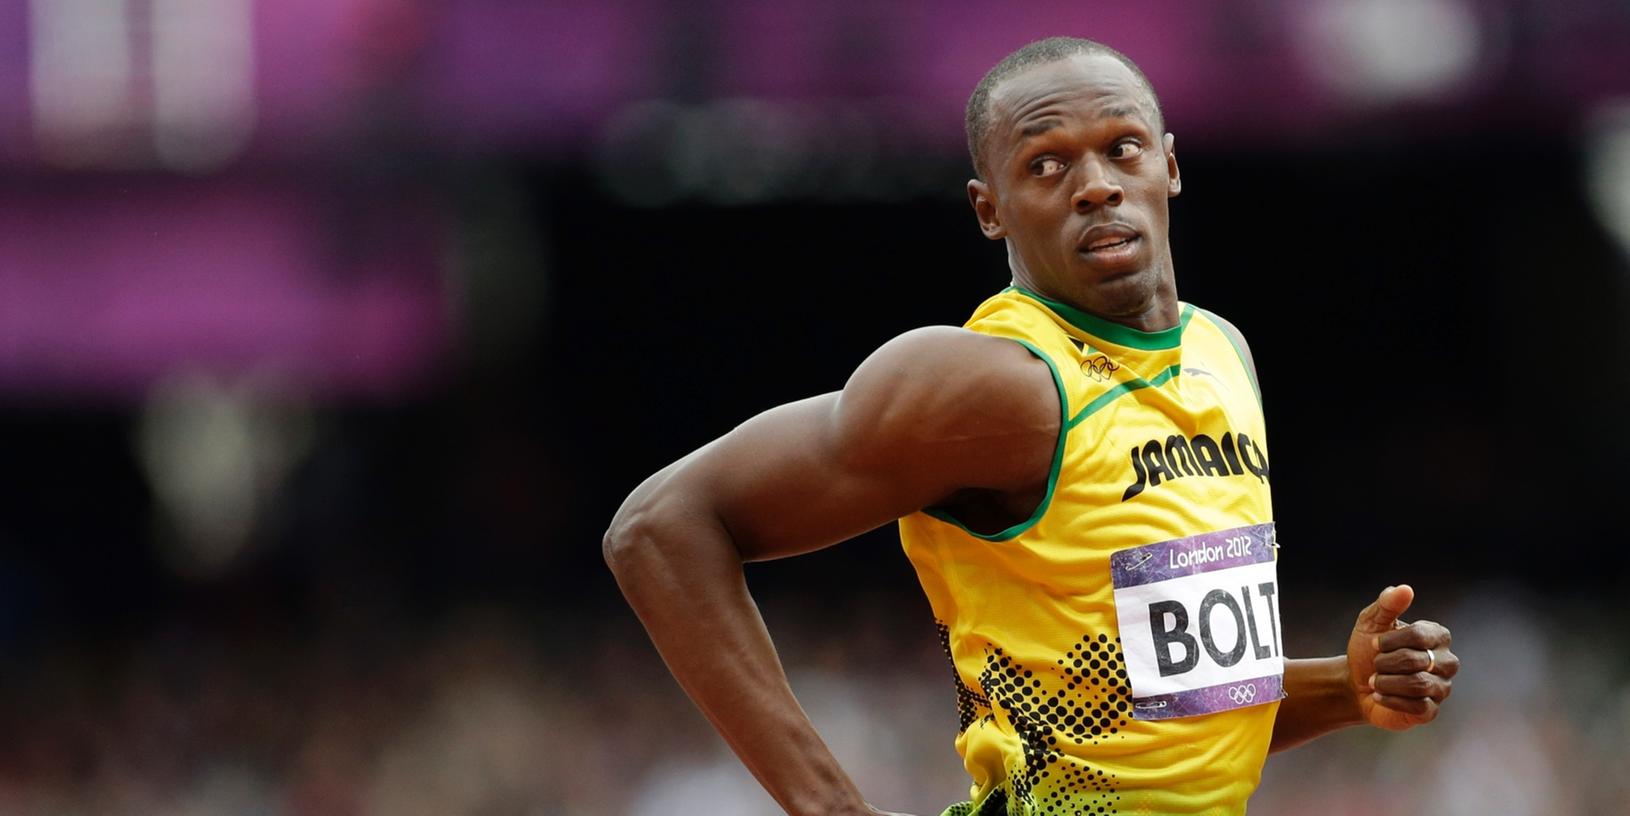 "Das wäre eine großartige Überschrift: Usain Bolt schlägt Geparden", scherzt der mehrfache Olympiasieger.